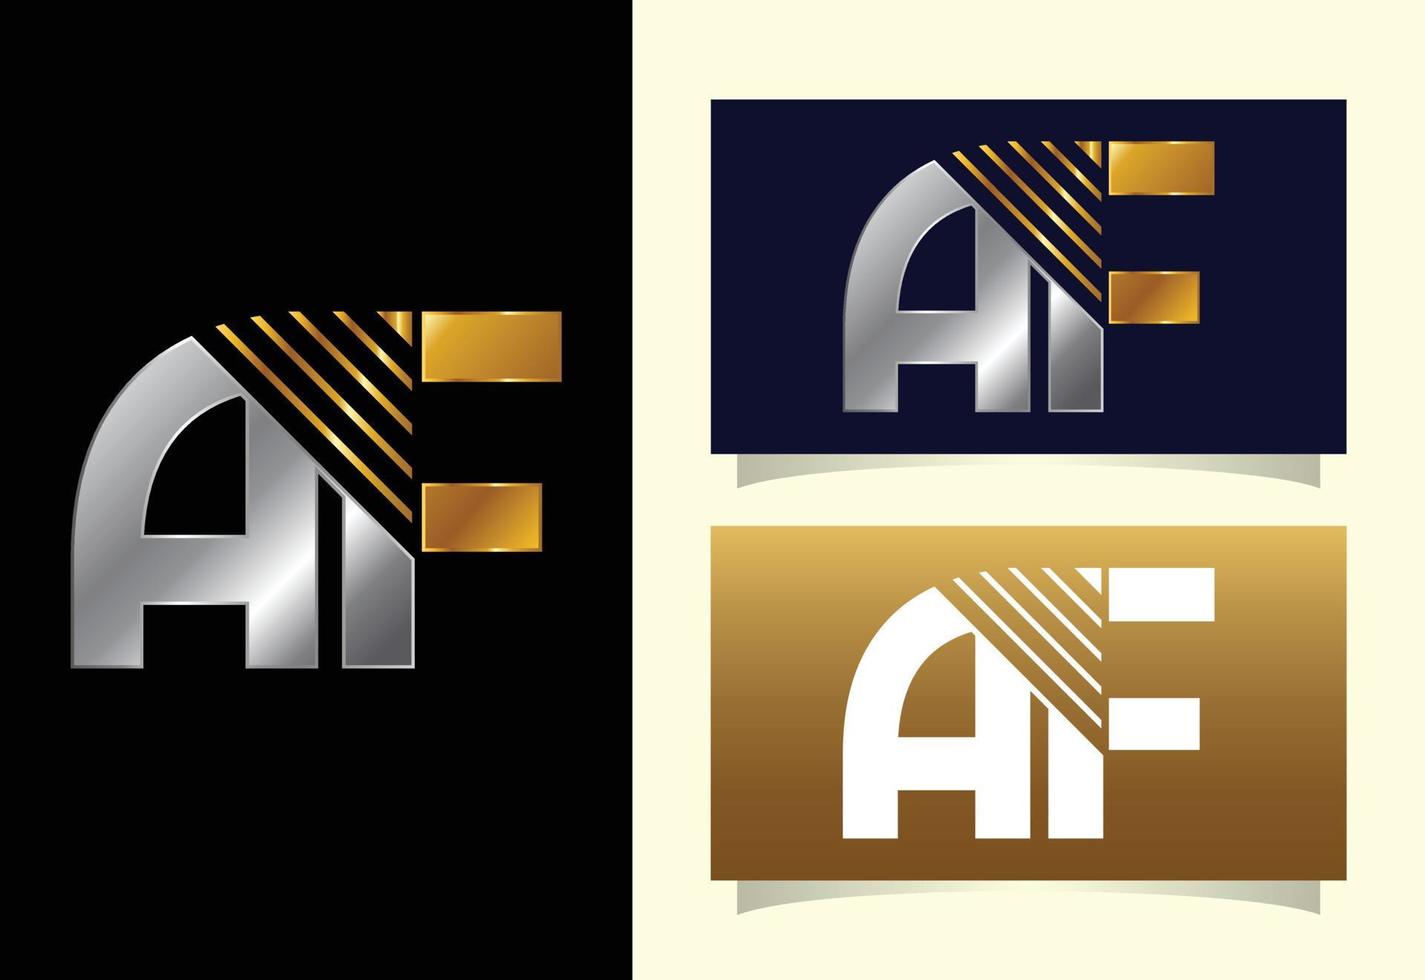 modelo de design de logotipo de letra inicial af. símbolo gráfico do alfabeto para identidade de negócios corporativos vetor